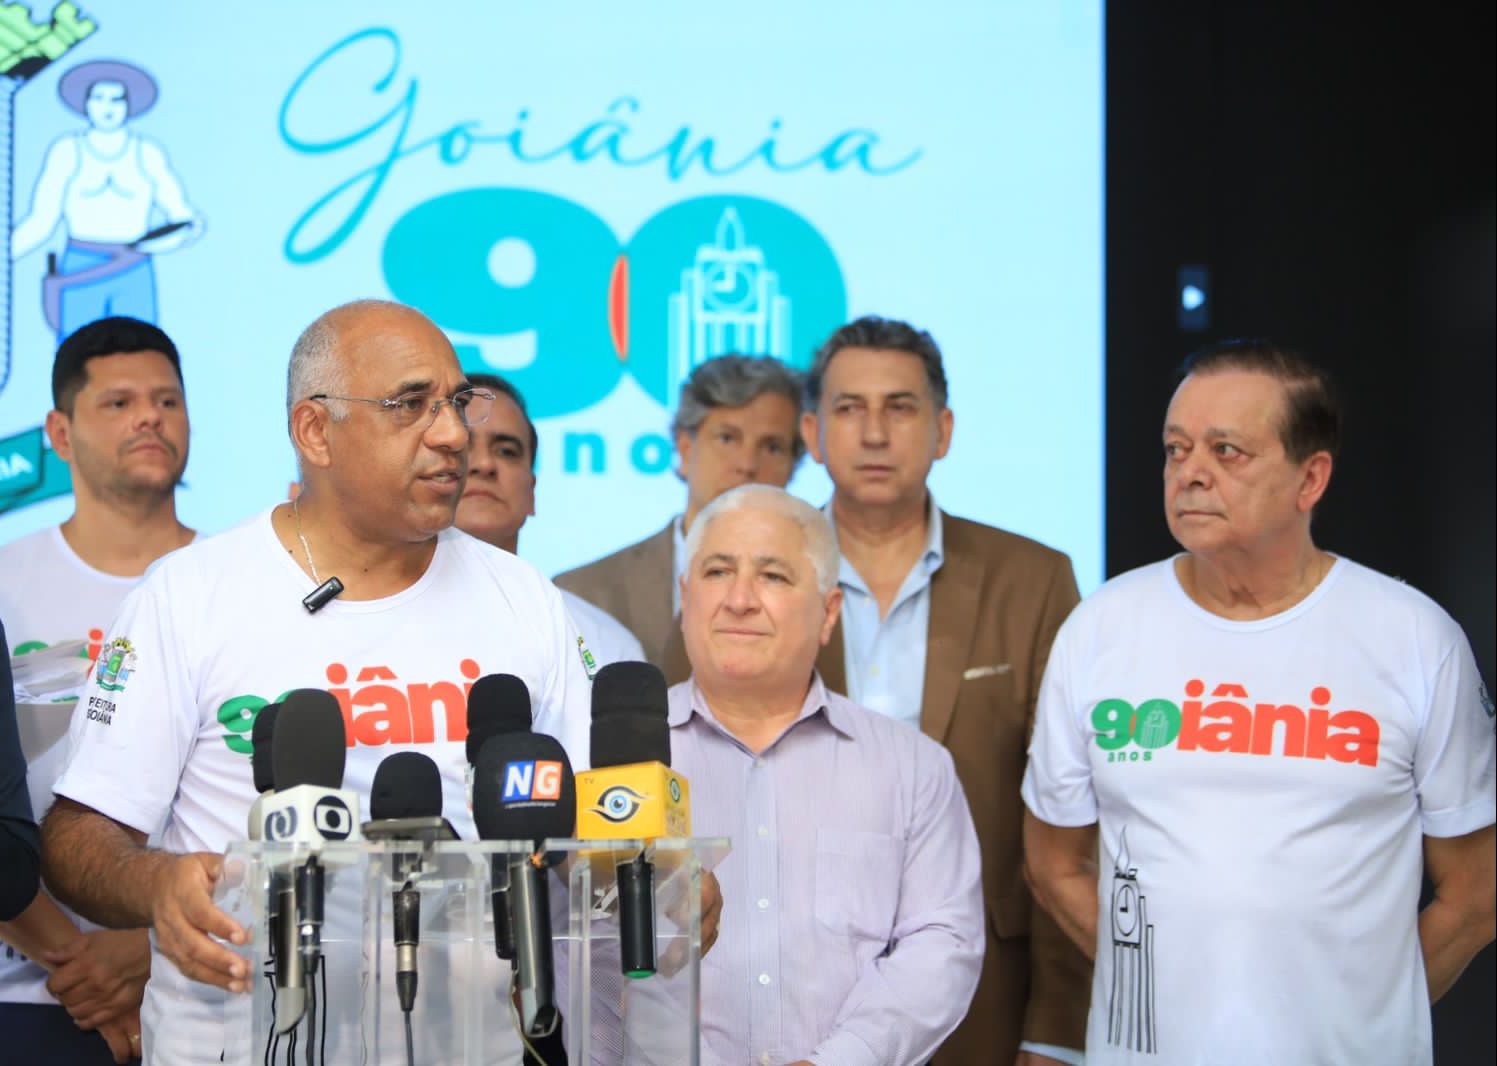 Aniversário de 90 anos de Goiânia terá Leonardo e mais de 10 shows no mês de outubro - prefeito de goiania anuncio